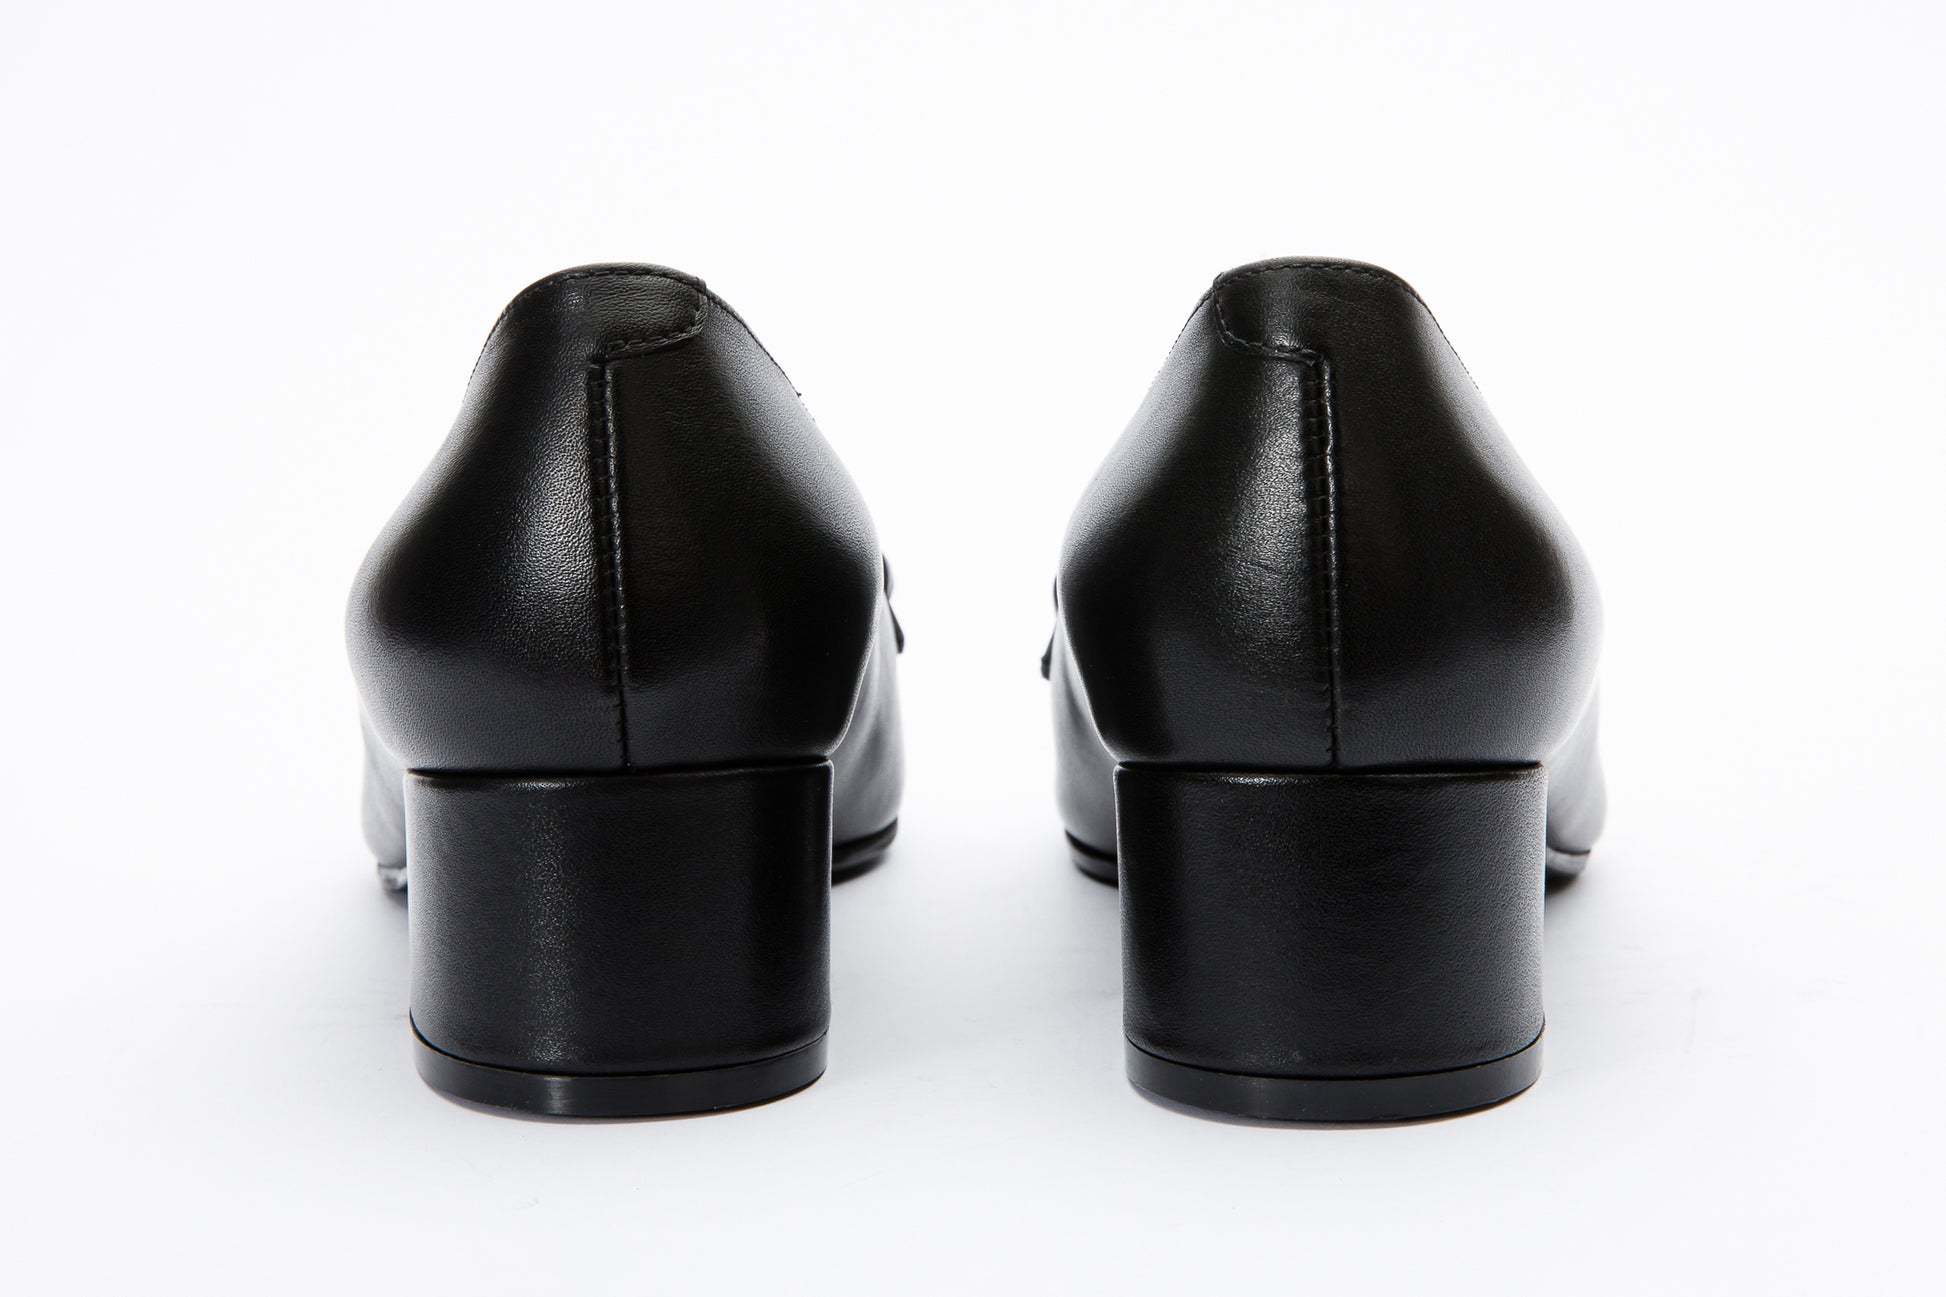 The Delhi Black Leather Block Heel Pump Women Shoe – Vinci Leather Shoes